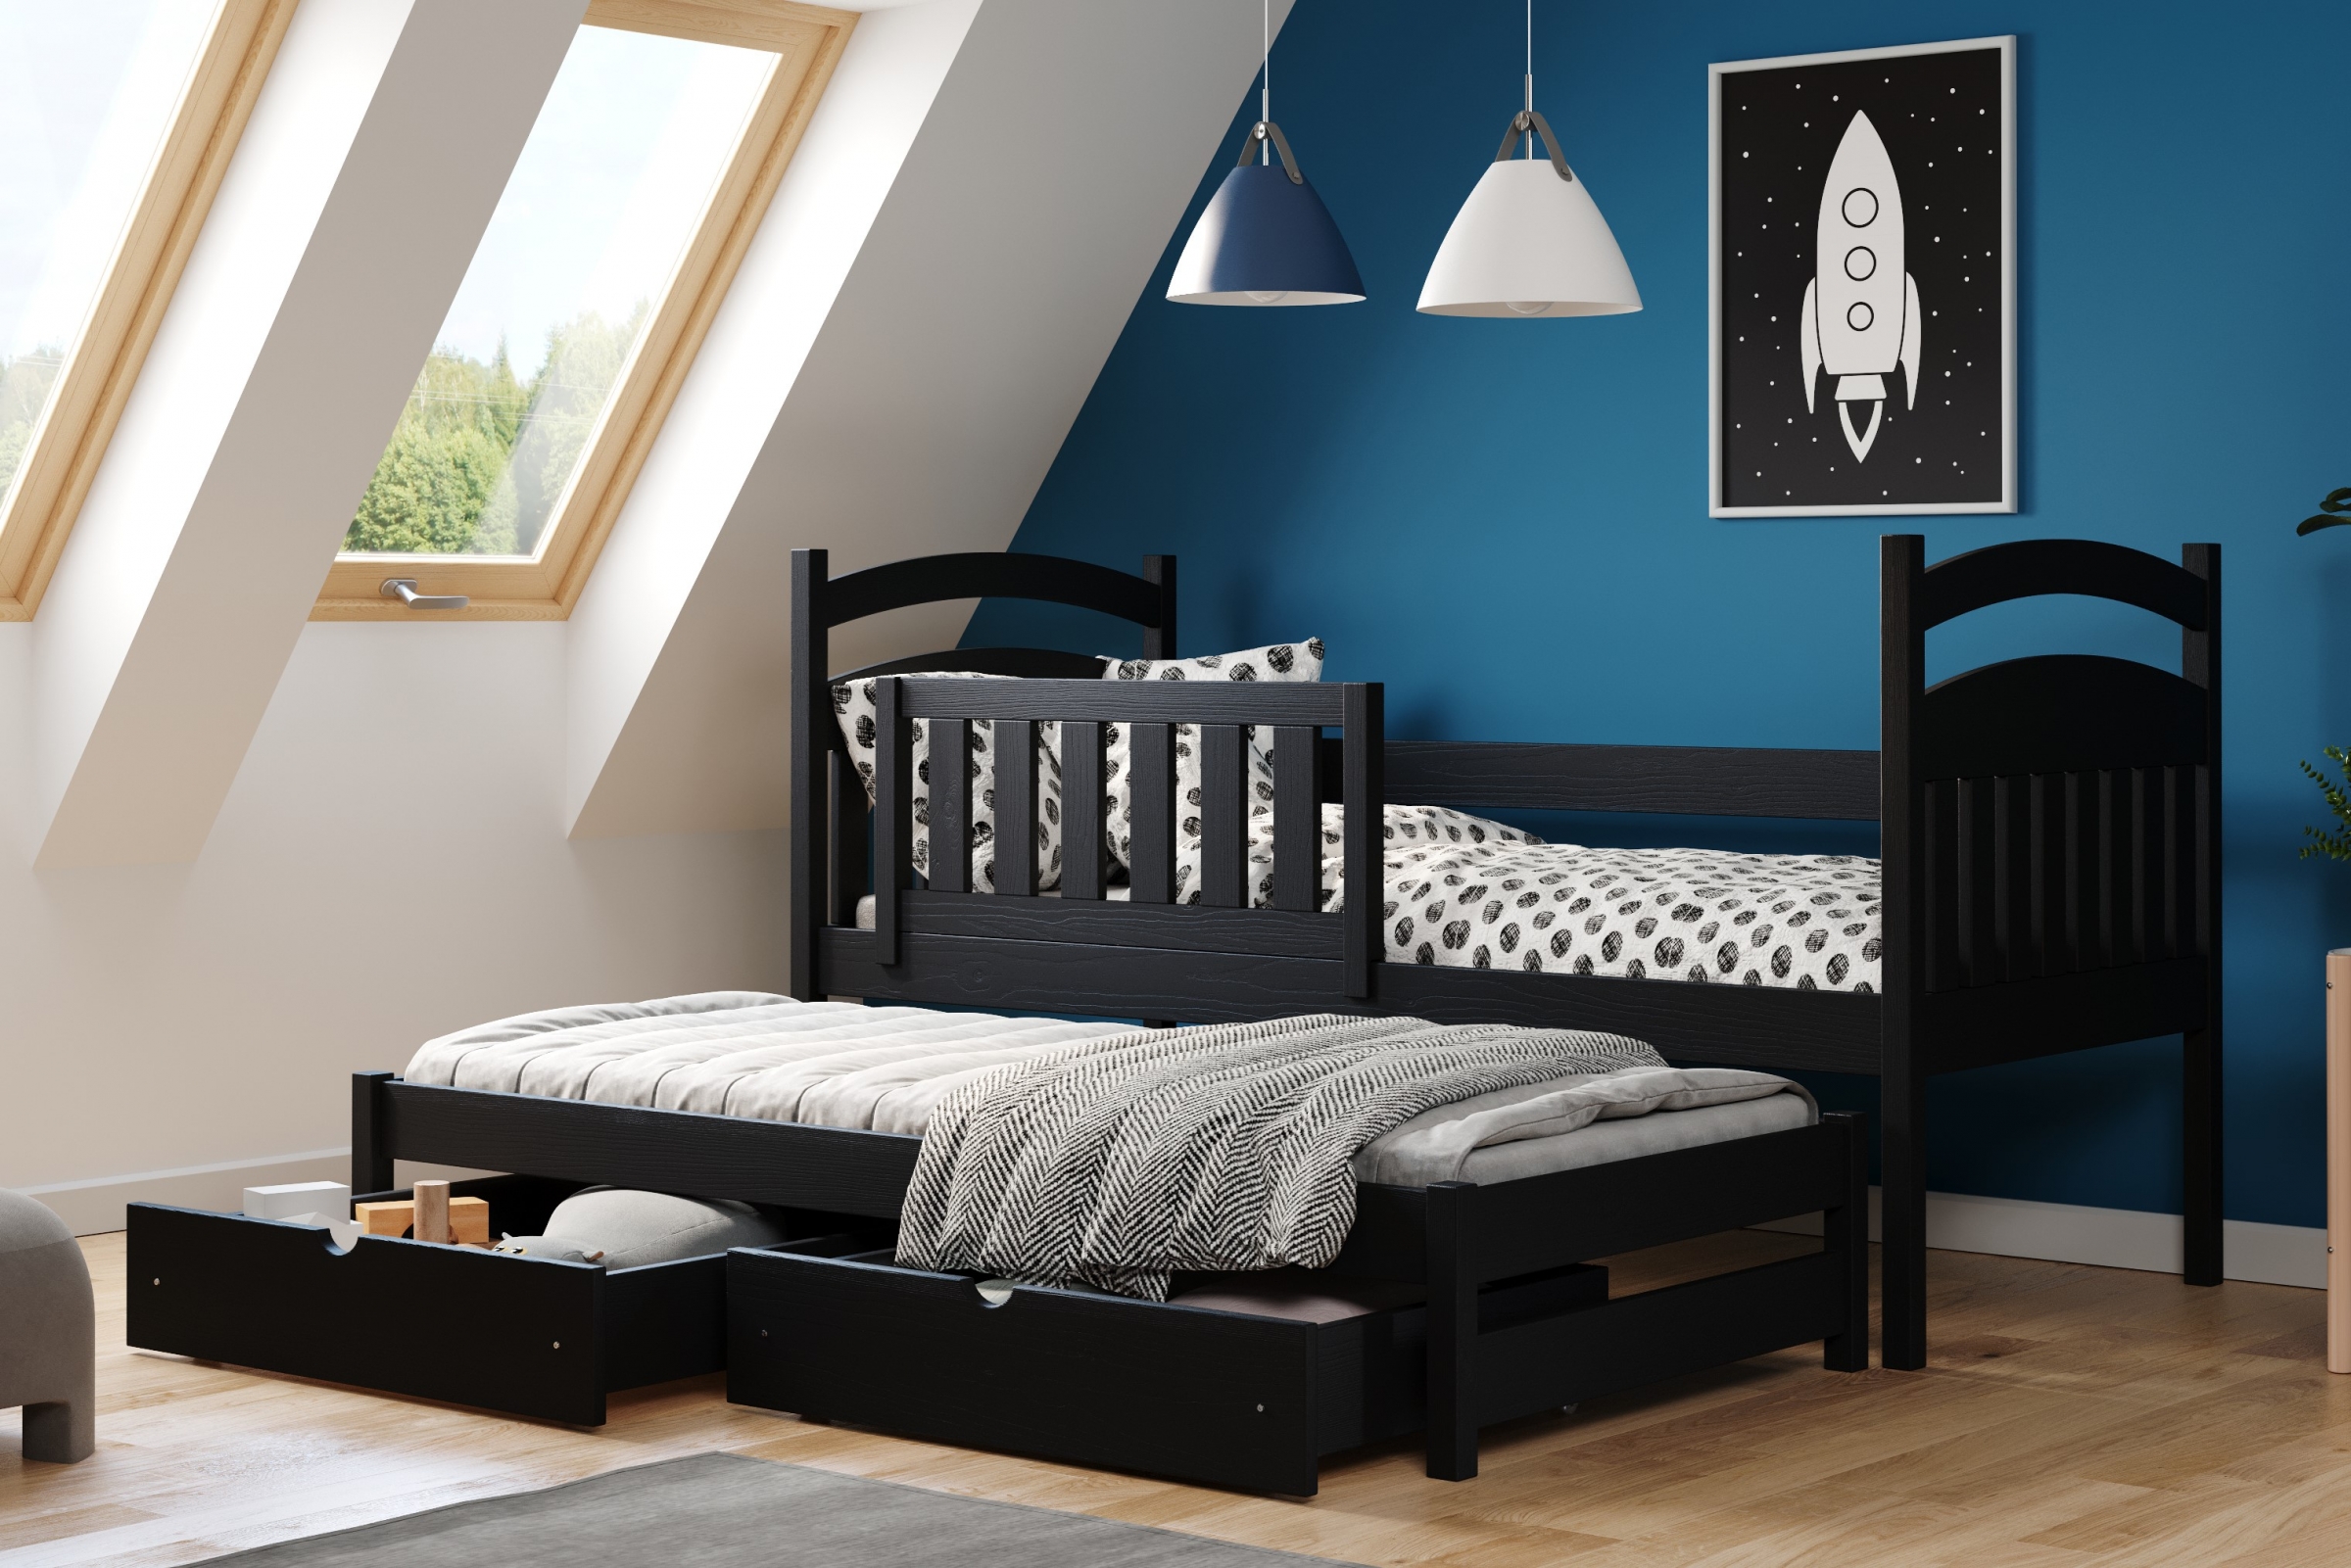 Detská posteľ prízemná výsuvna Amely - Farba Čierny, rozmer 90x200 Posteľ dzieciece prízemná s výsuvným lôžkom Amely - Farba Čierny - vizualizácia